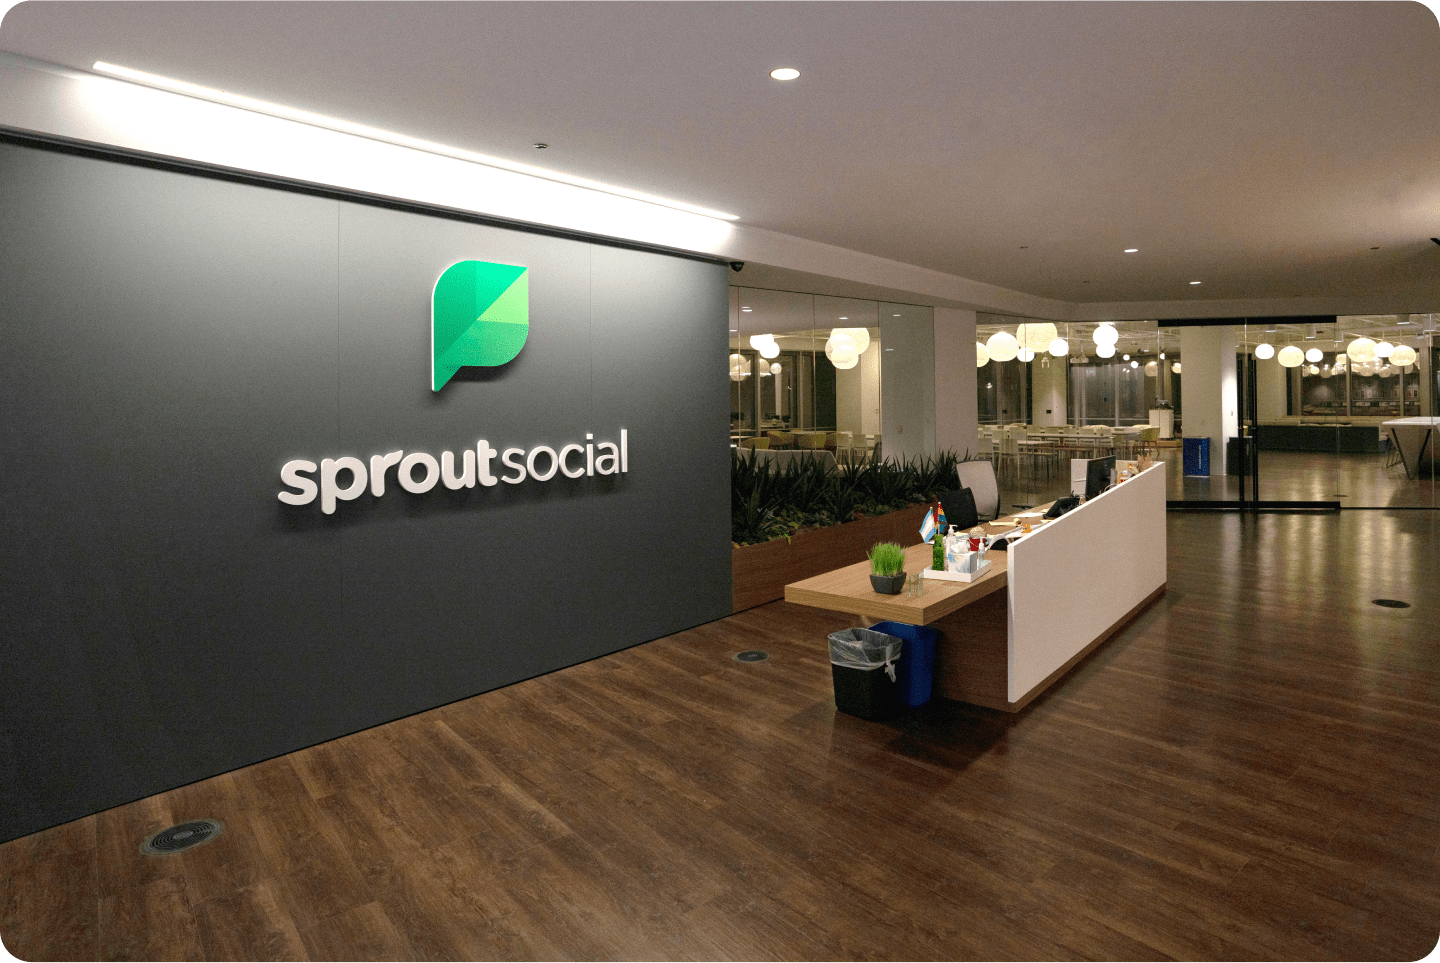 El logotipo de Sprout Social se muestra de forma prominente en la pared detrás de la recepción de la oficina de Sprout en Chicago.